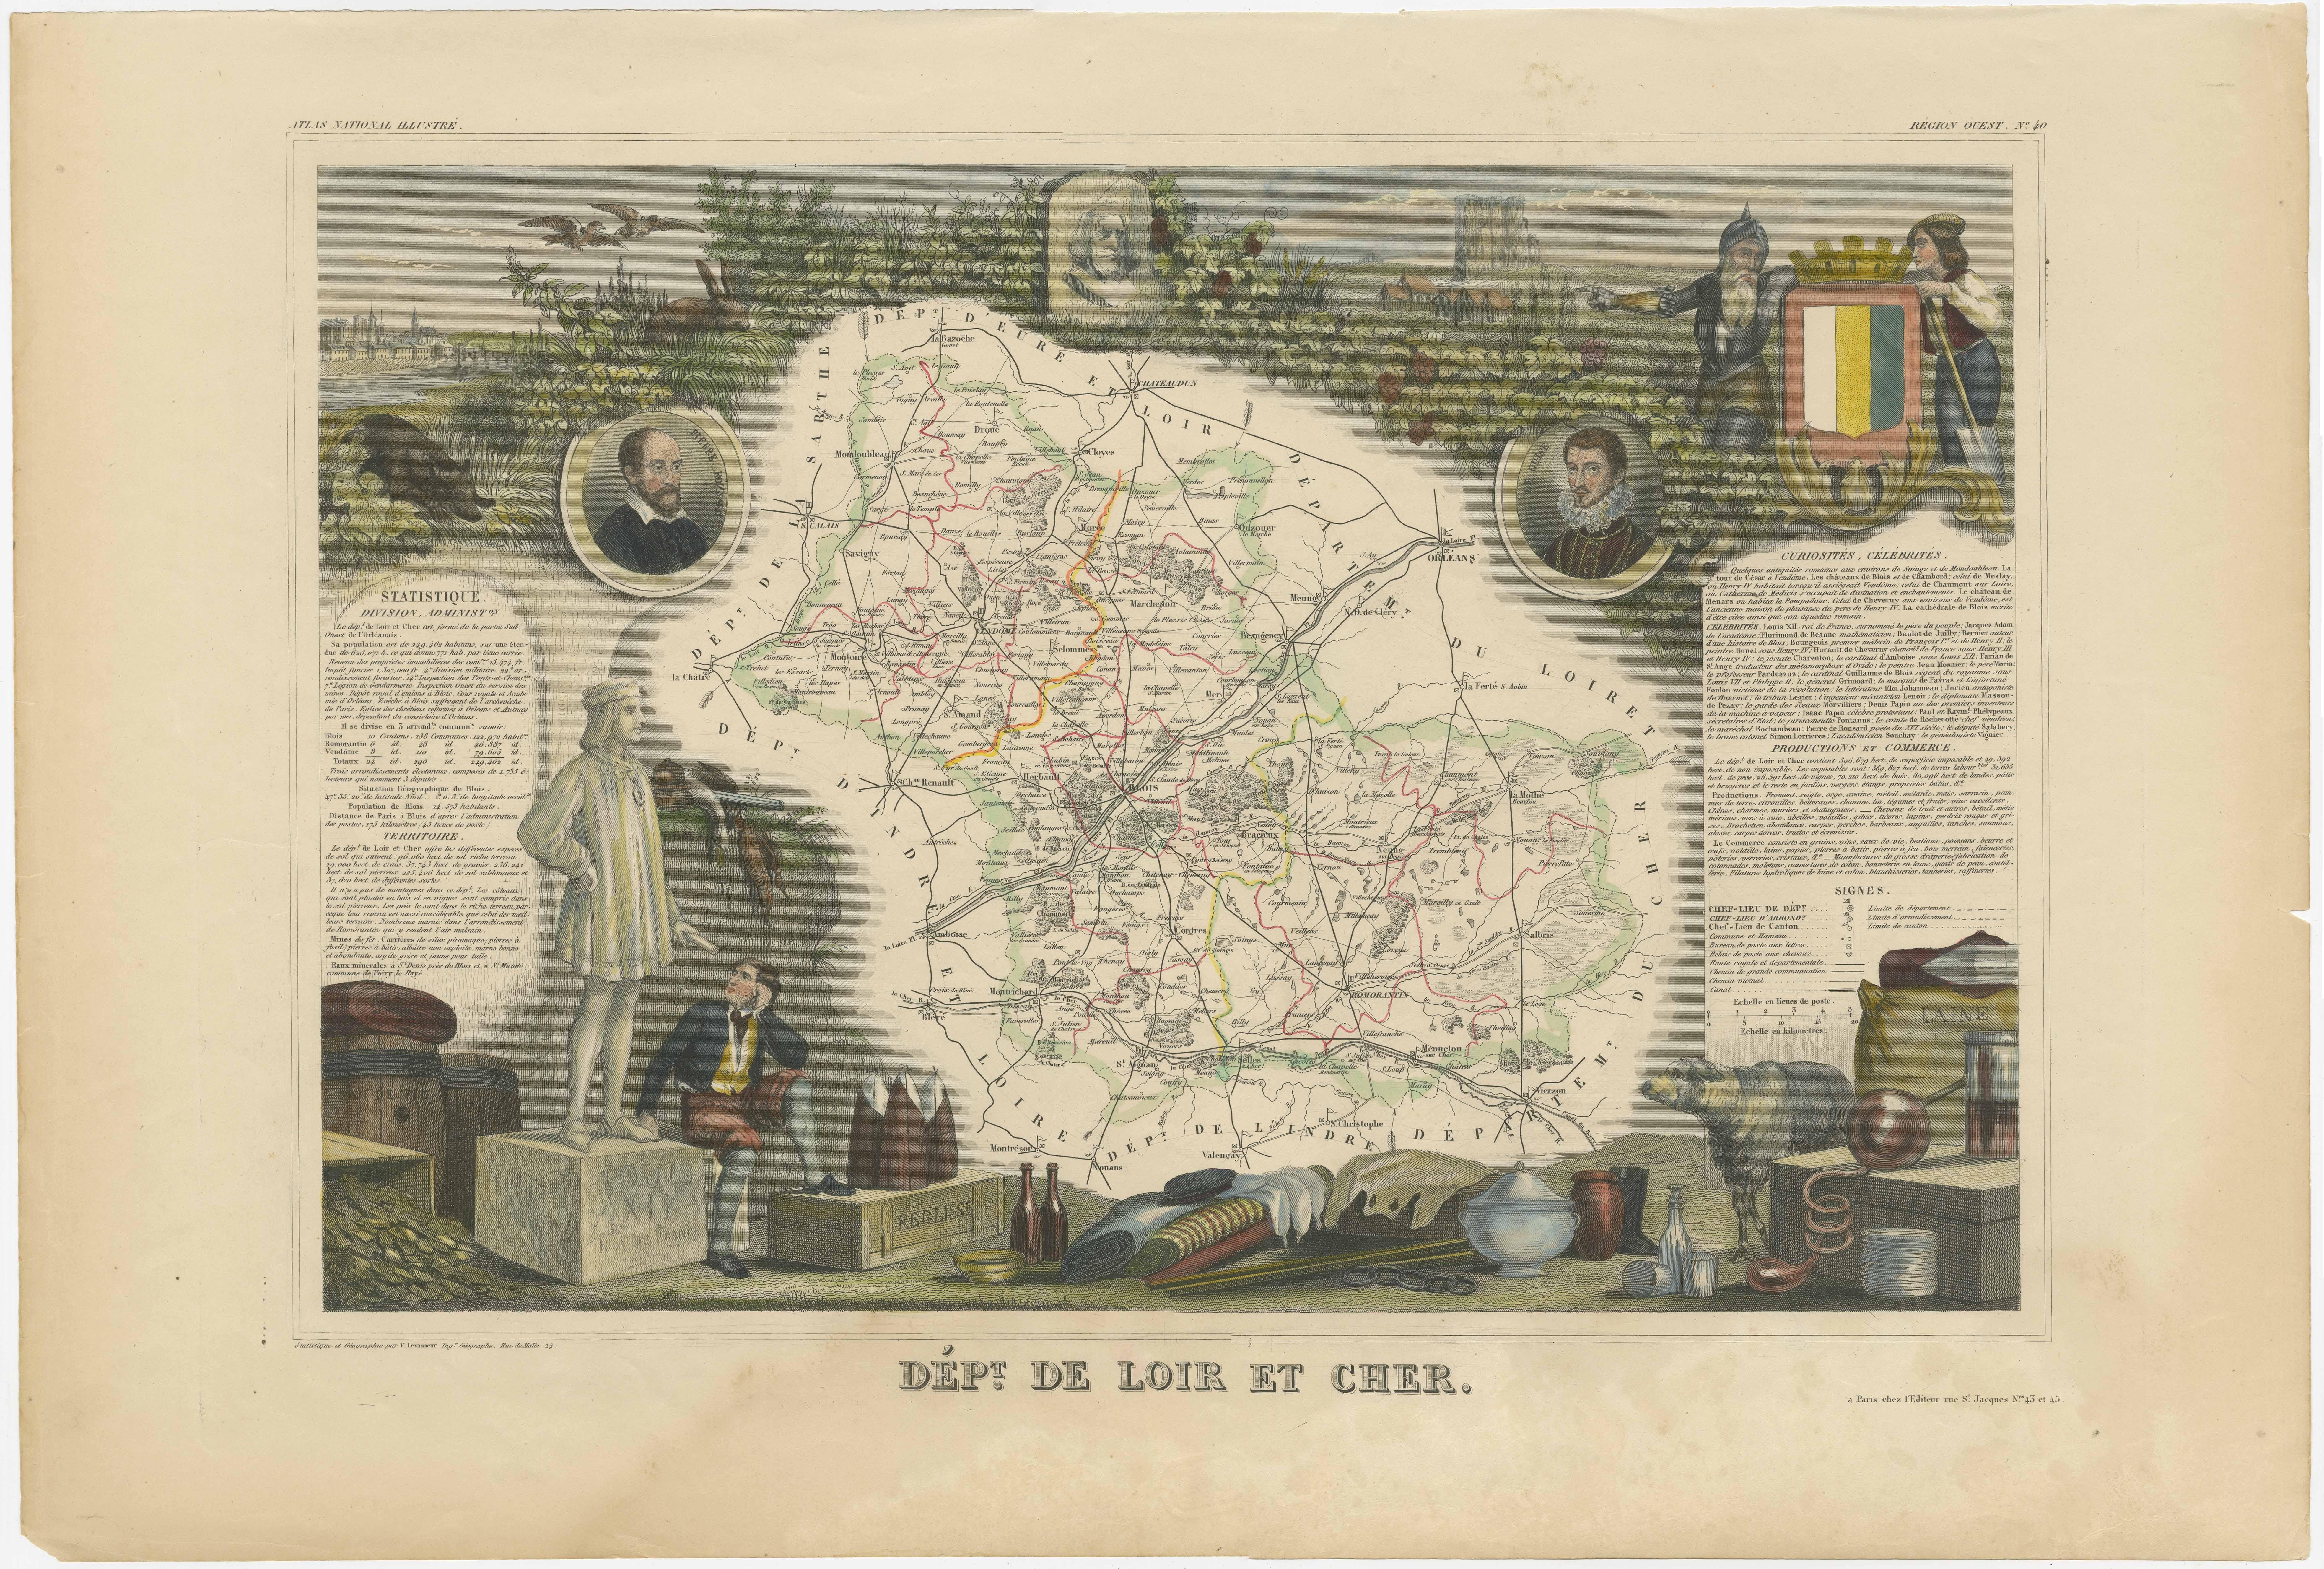 Antike Karte mit dem Titel 'Dépt. de Loir et Cher'. Karte des französischen Departements Loir-et-Cher, Frankreich. Dieses Gebiet ist vor allem für die Herstellung von Selles-sur-Cher bekannt, einem feinen Ziegenmilchkäse. Das Ganze ist von